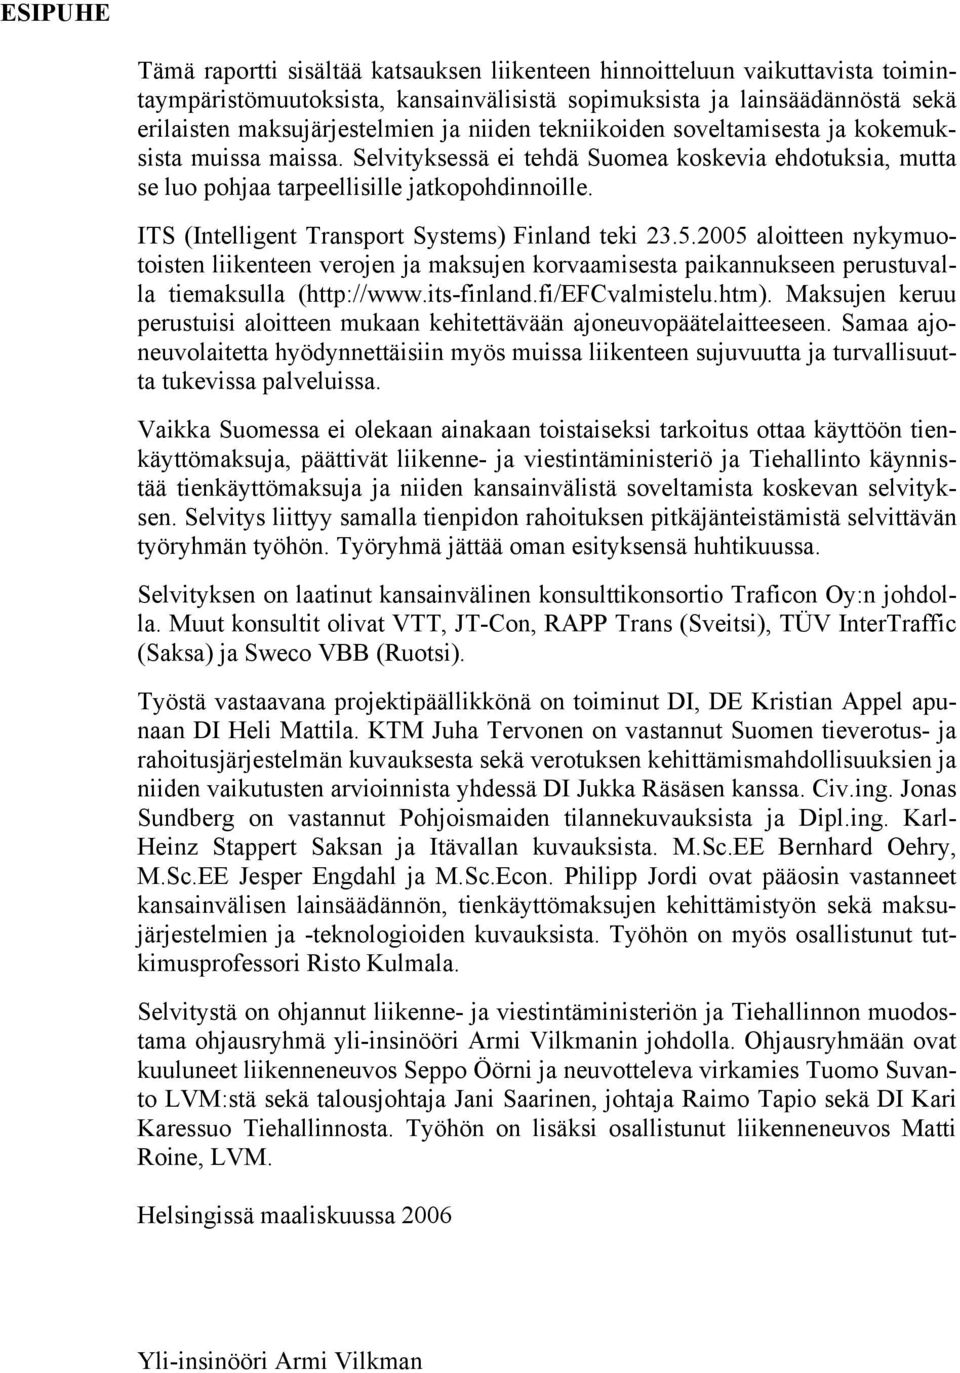 ITS (Intelligent Transport Systems) Finland teki 23.5.2005 aloitteen nykymuotoisten liikenteen verojen ja maksujen korvaamisesta paikannukseen perustuvalla tiemaksulla (http://www.its-finland.